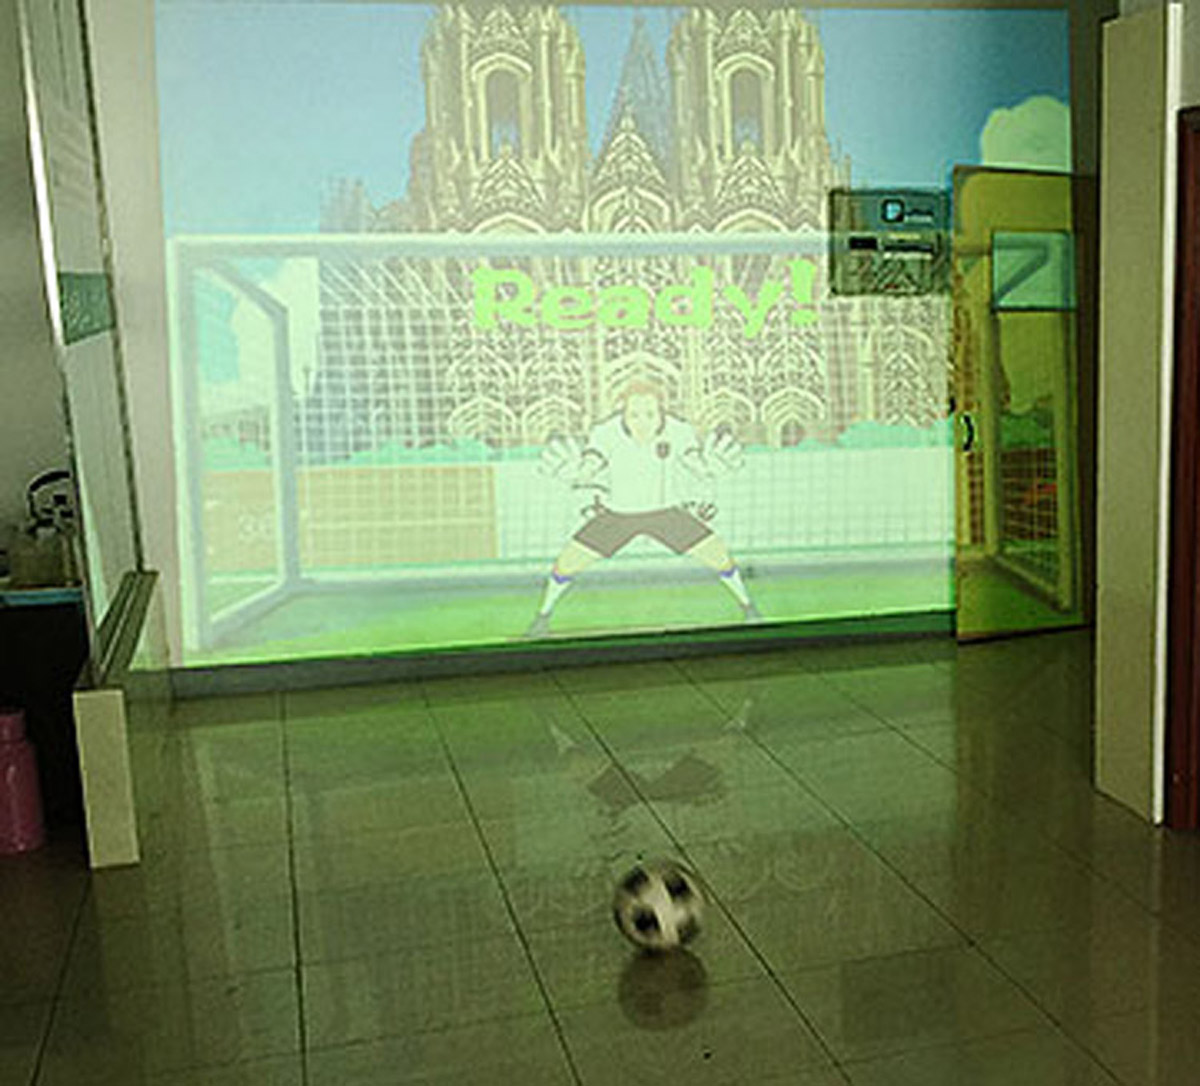 动感影院使用体感识别技术的虚拟足球射门.jpg